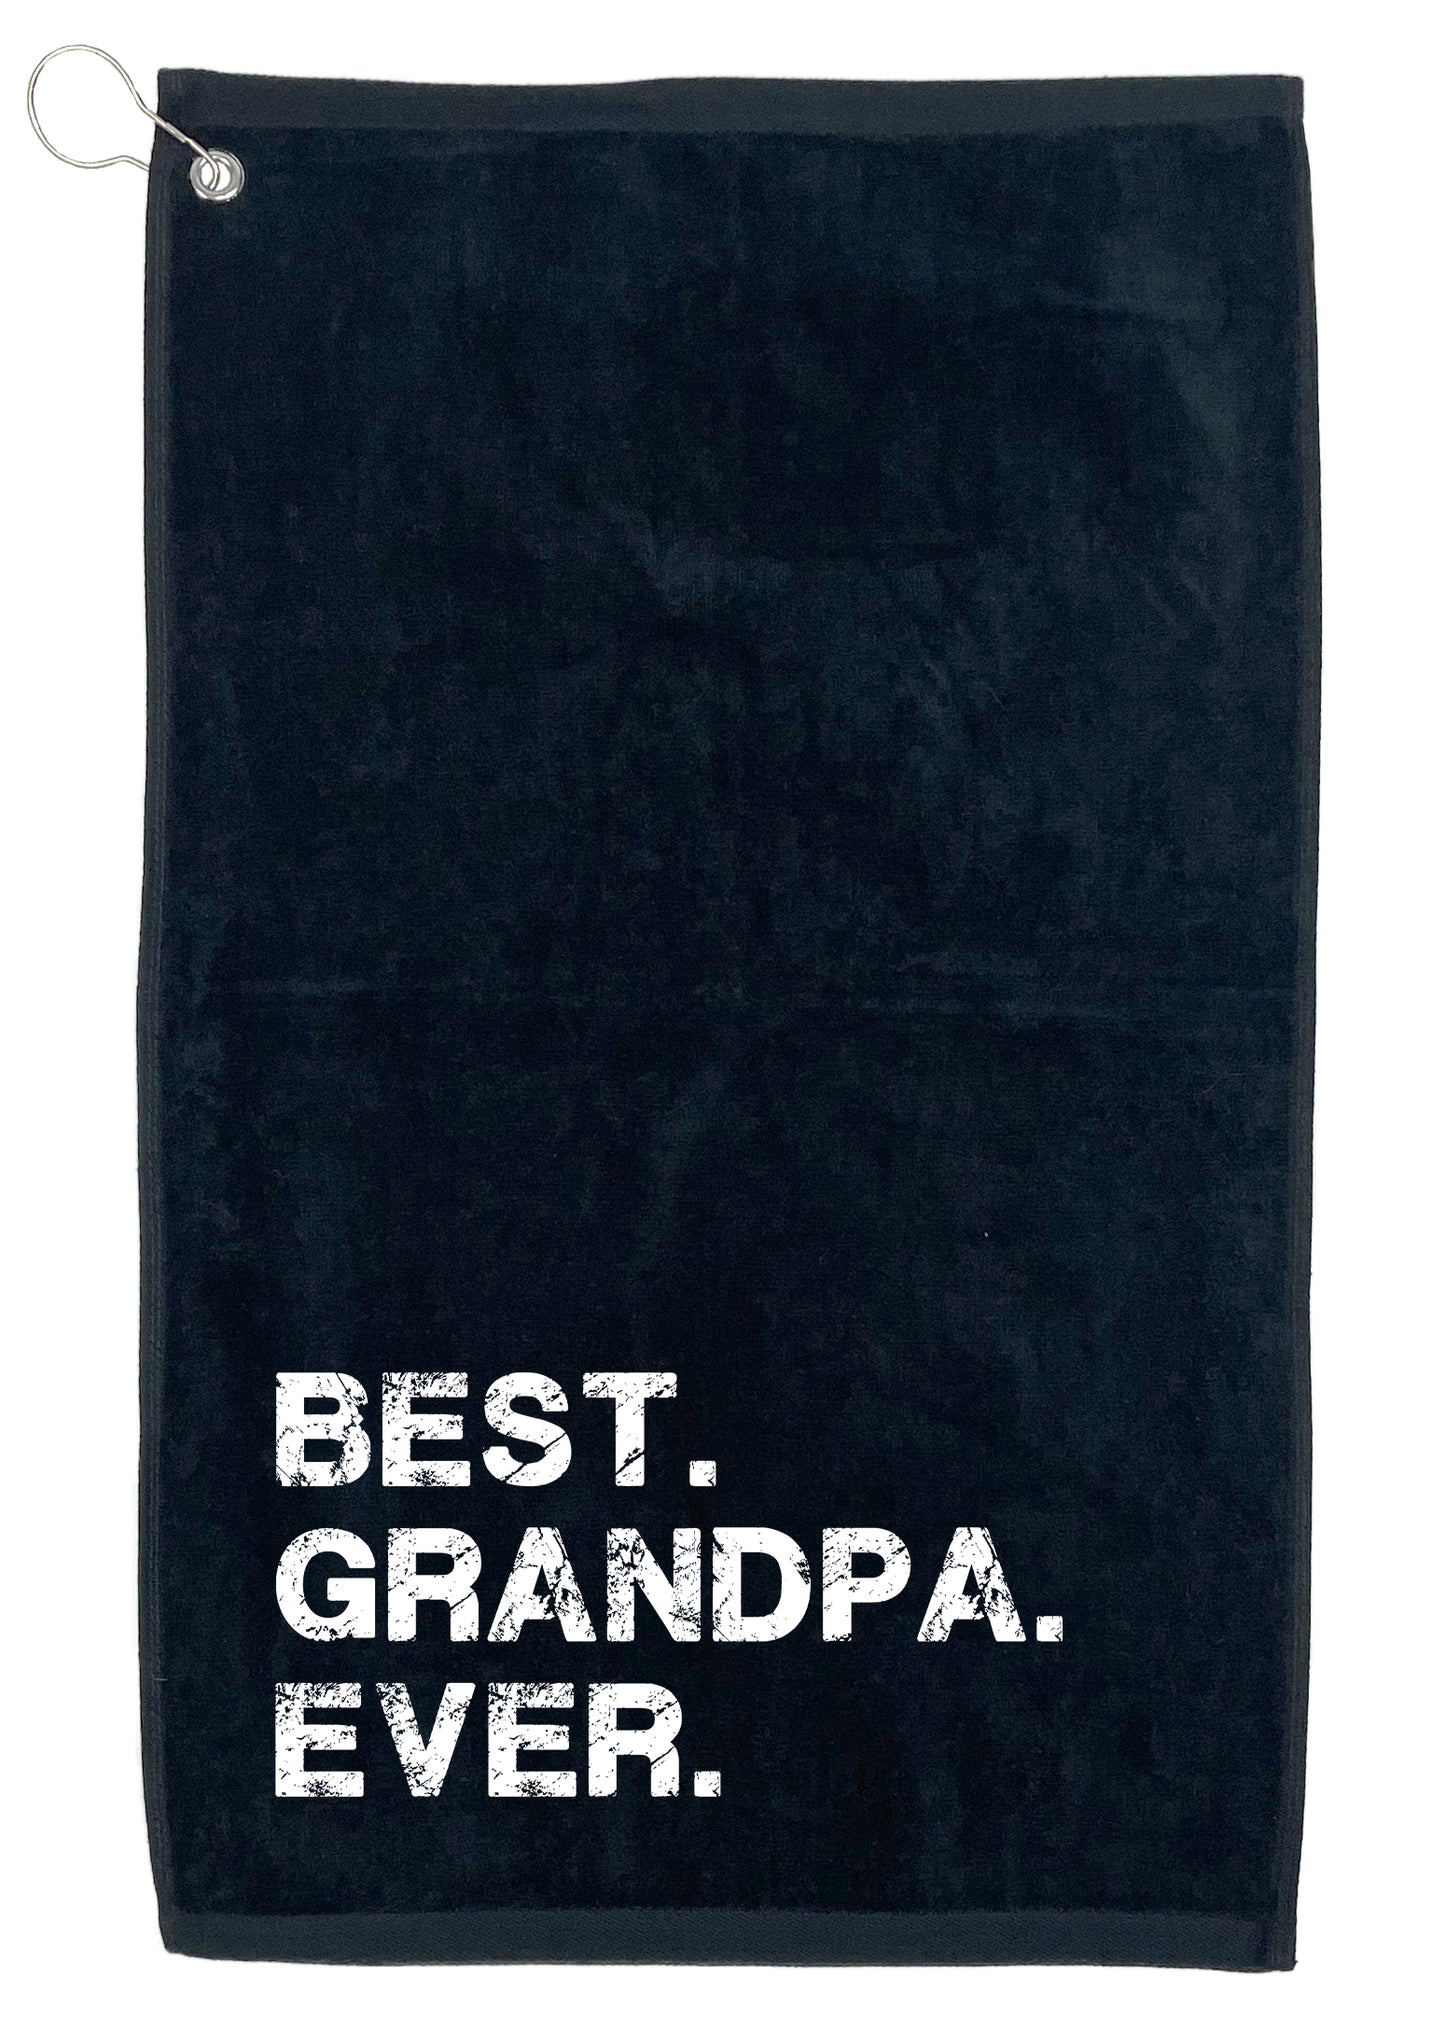 Best Grandpa Ever. Golf Towel